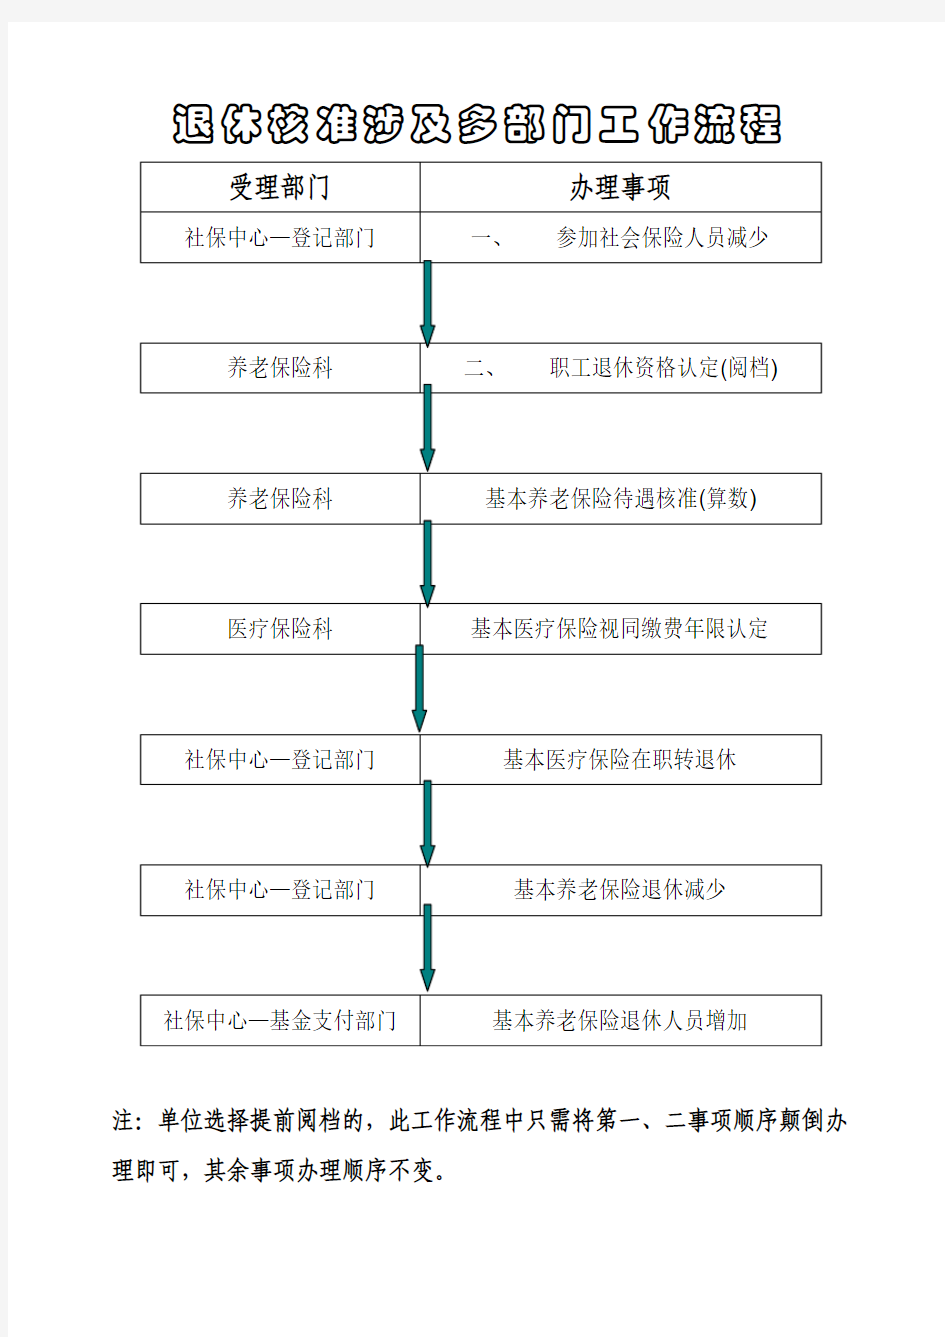 北京西城区退休核准多部门流程